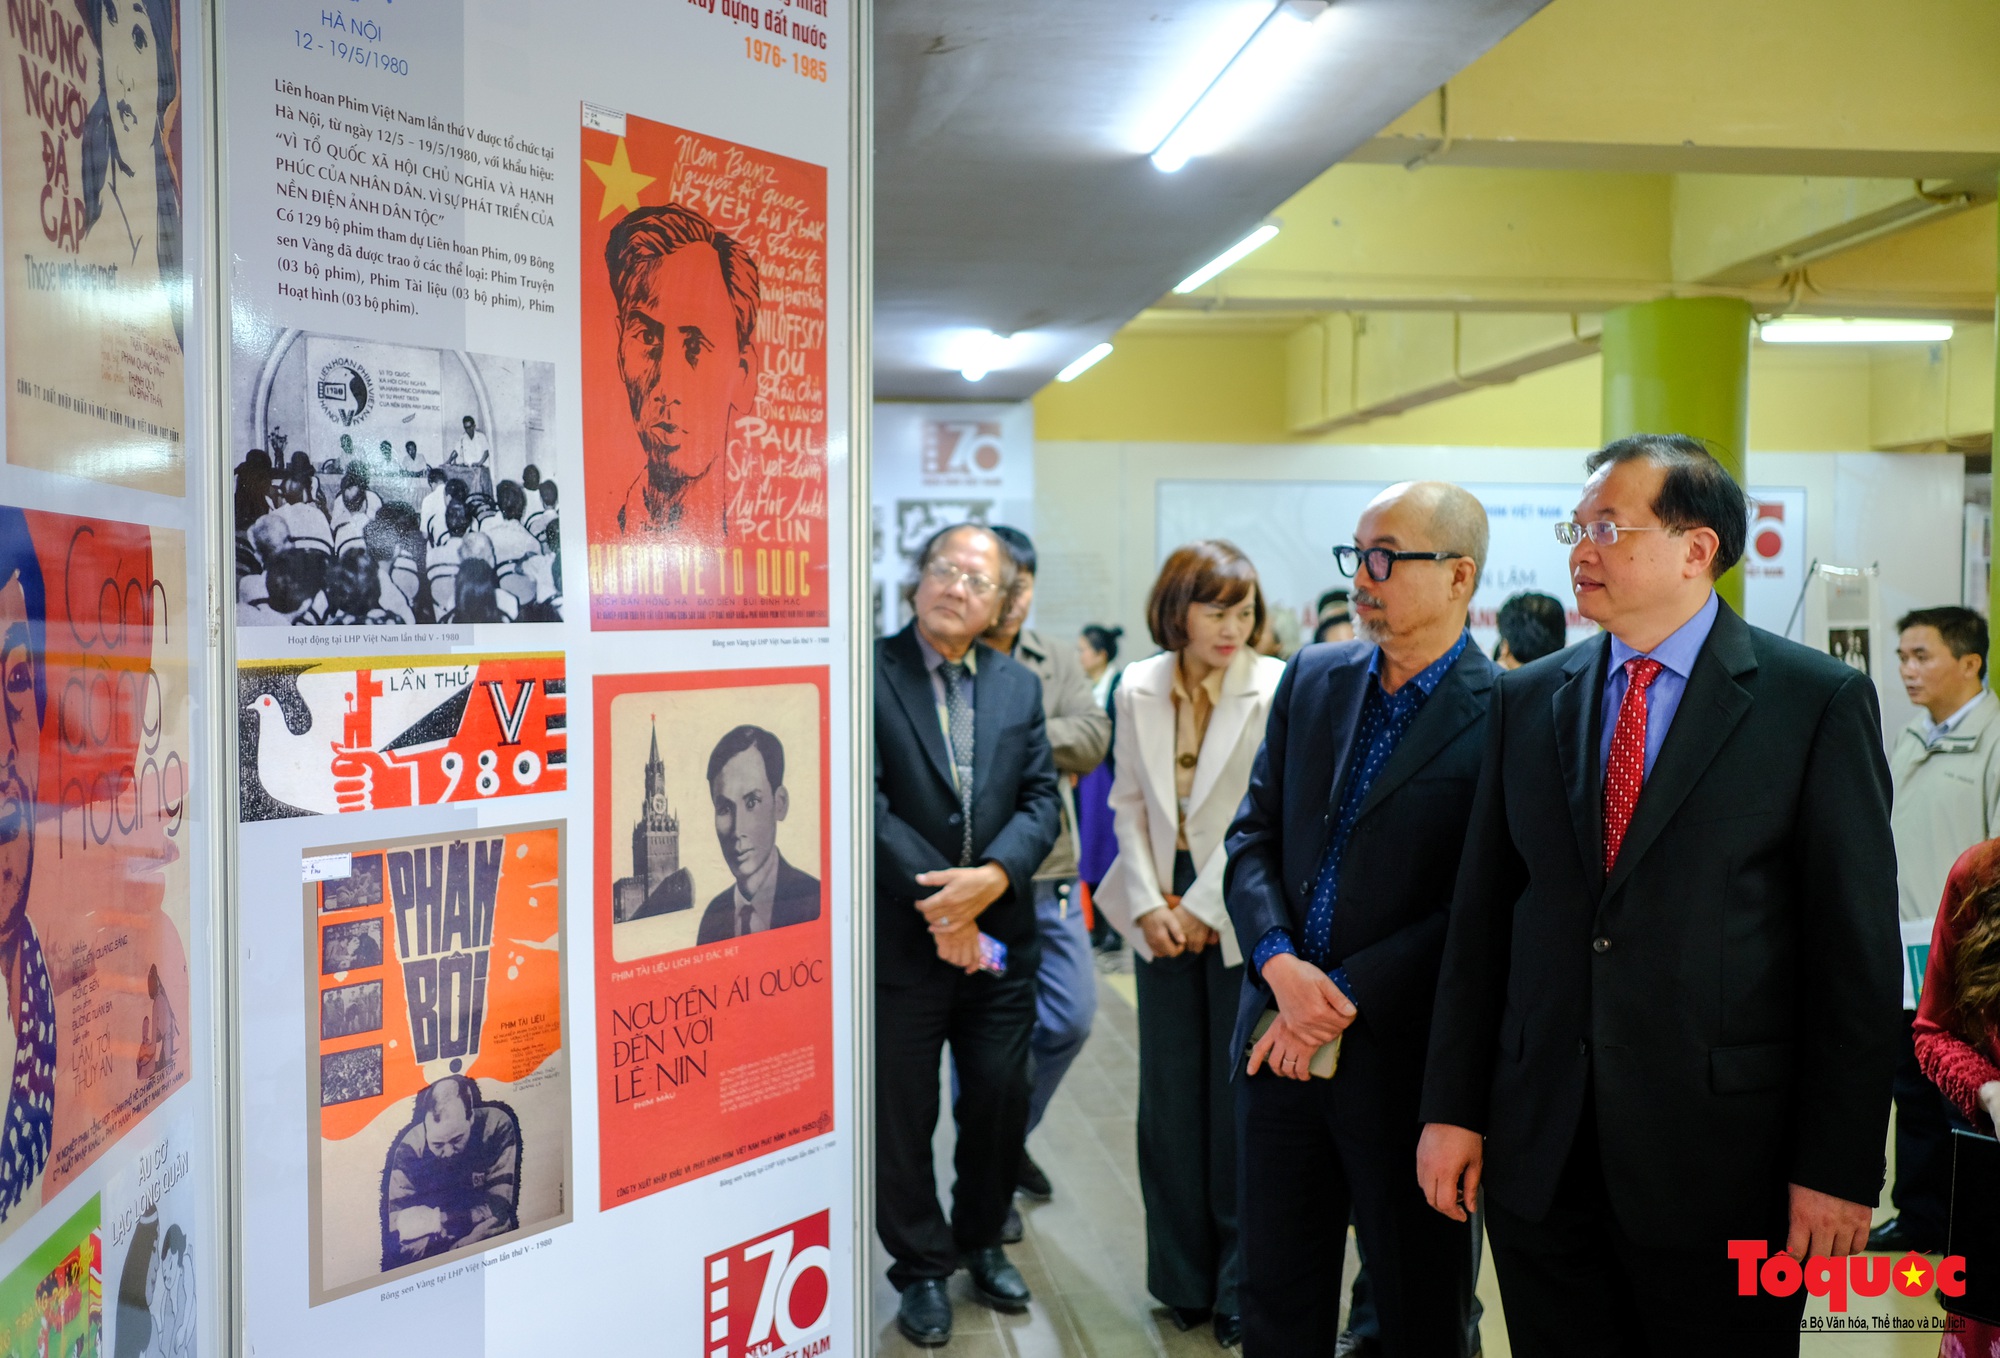 Hơn 200 tư liệu, hiện vật quý được trưng bày kỷ niệm 70 năm Điện ảnh Cách mạng Việt Nam - Ảnh 4.